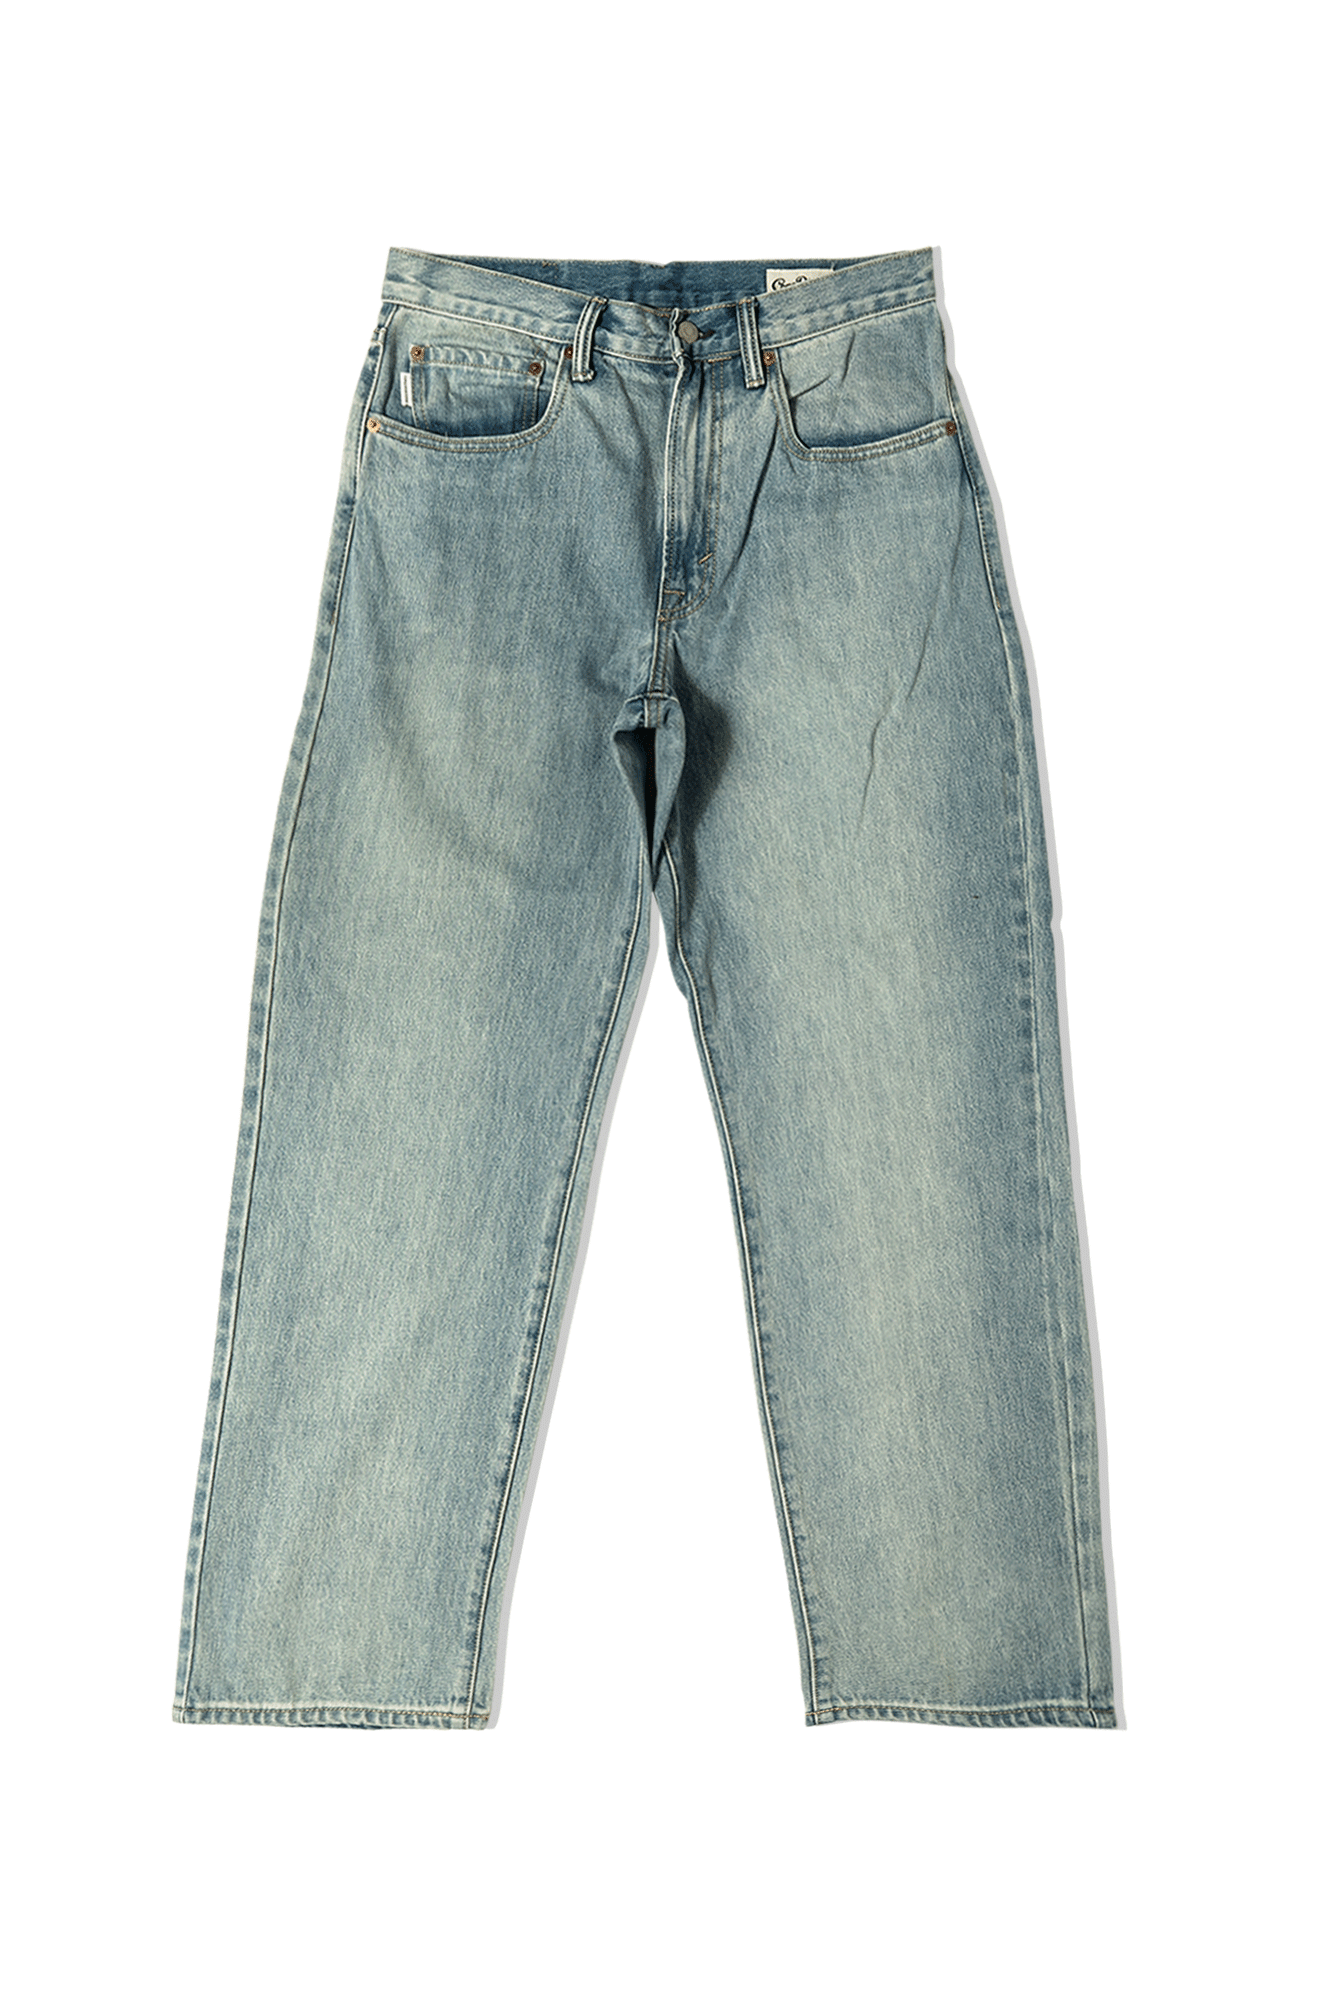 Regular 5 Pocket Jeans